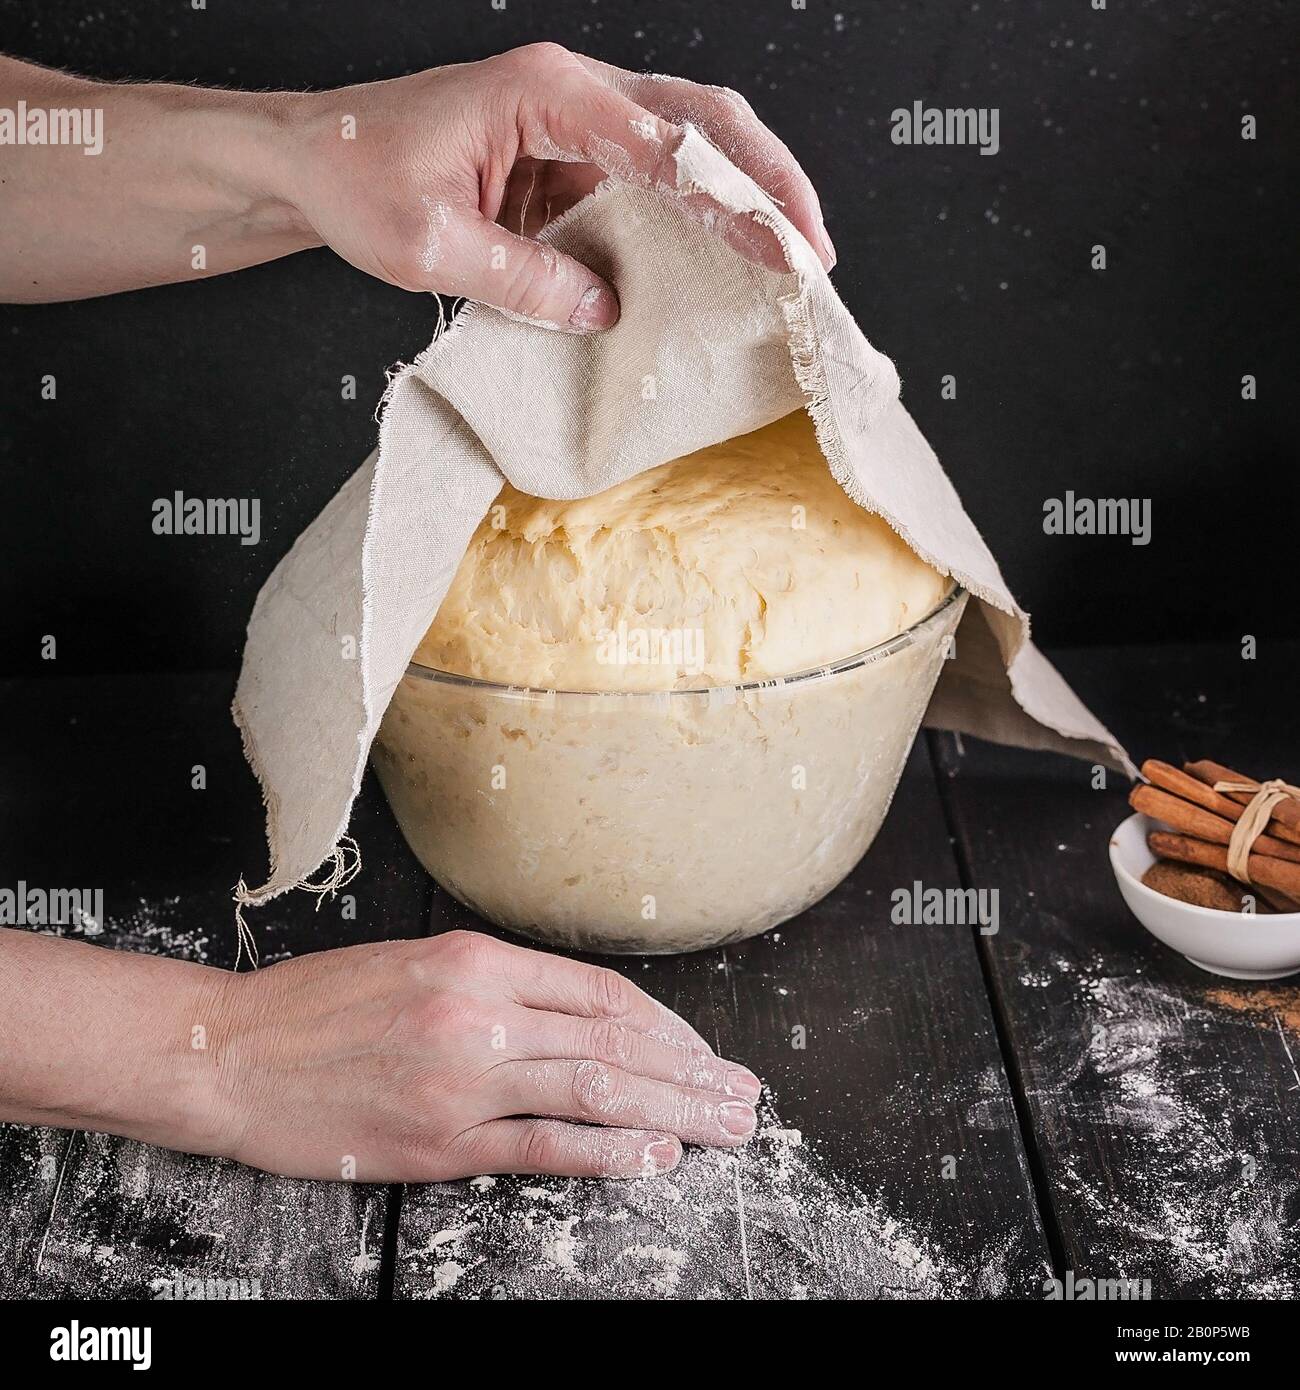 Les mains féminines tiennent une serviette sur une pâtisserie fermentée maison pour les petits pains. Gros plan. Recette étape par étape Banque D'Images